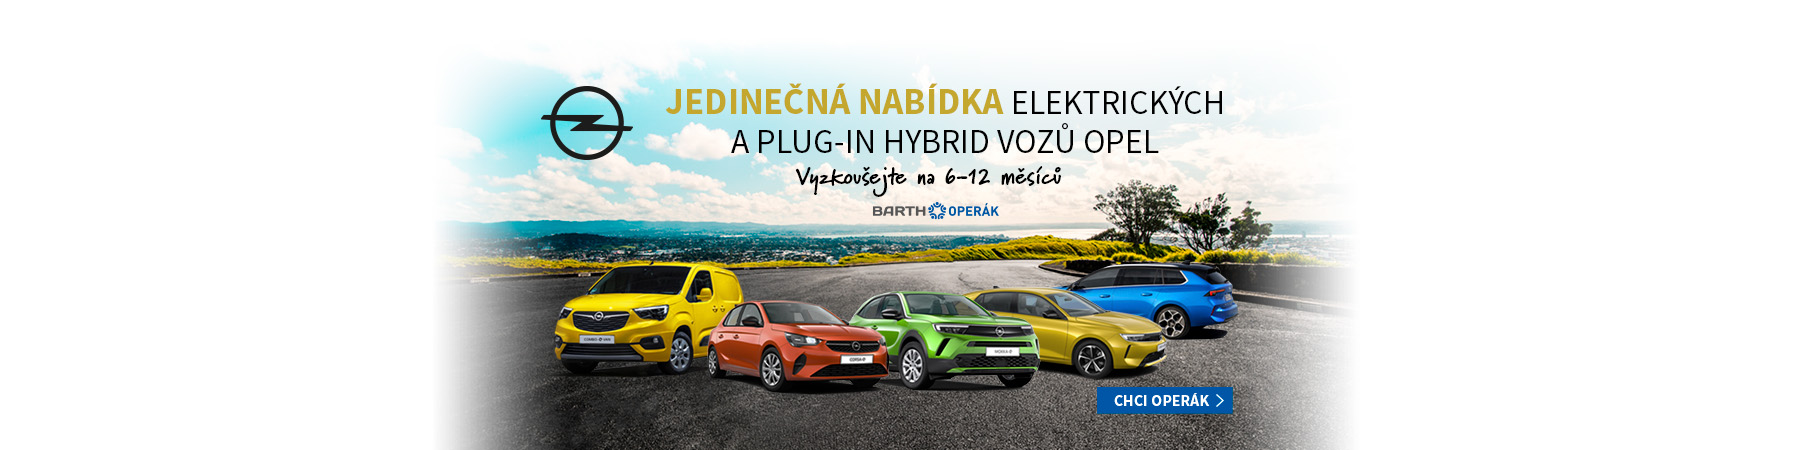 Opel Elektromobily